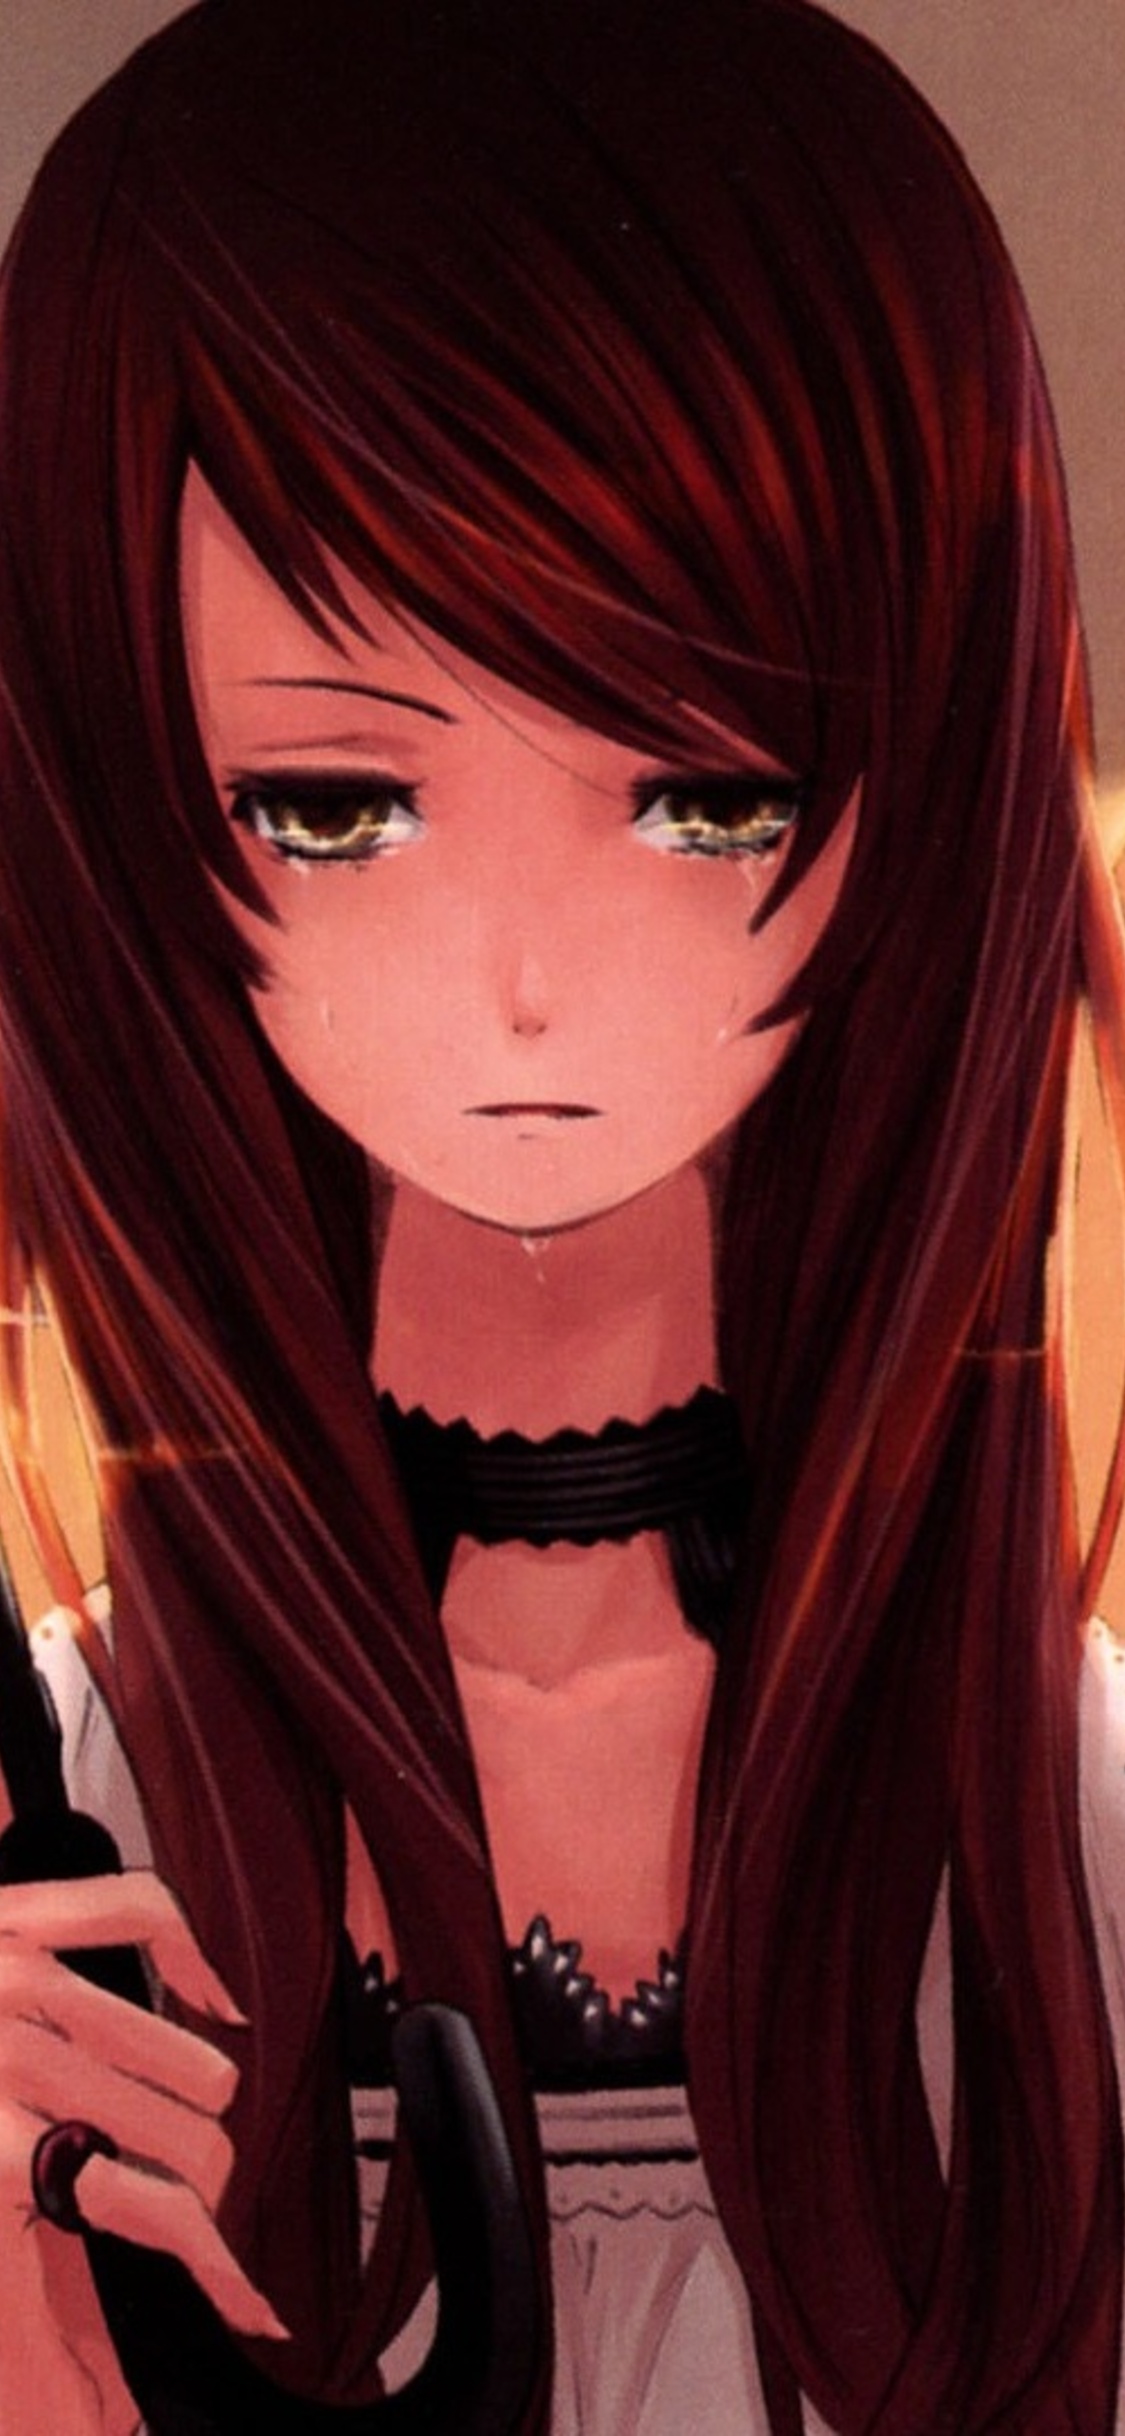 Anime Sad Girl Wallpapers